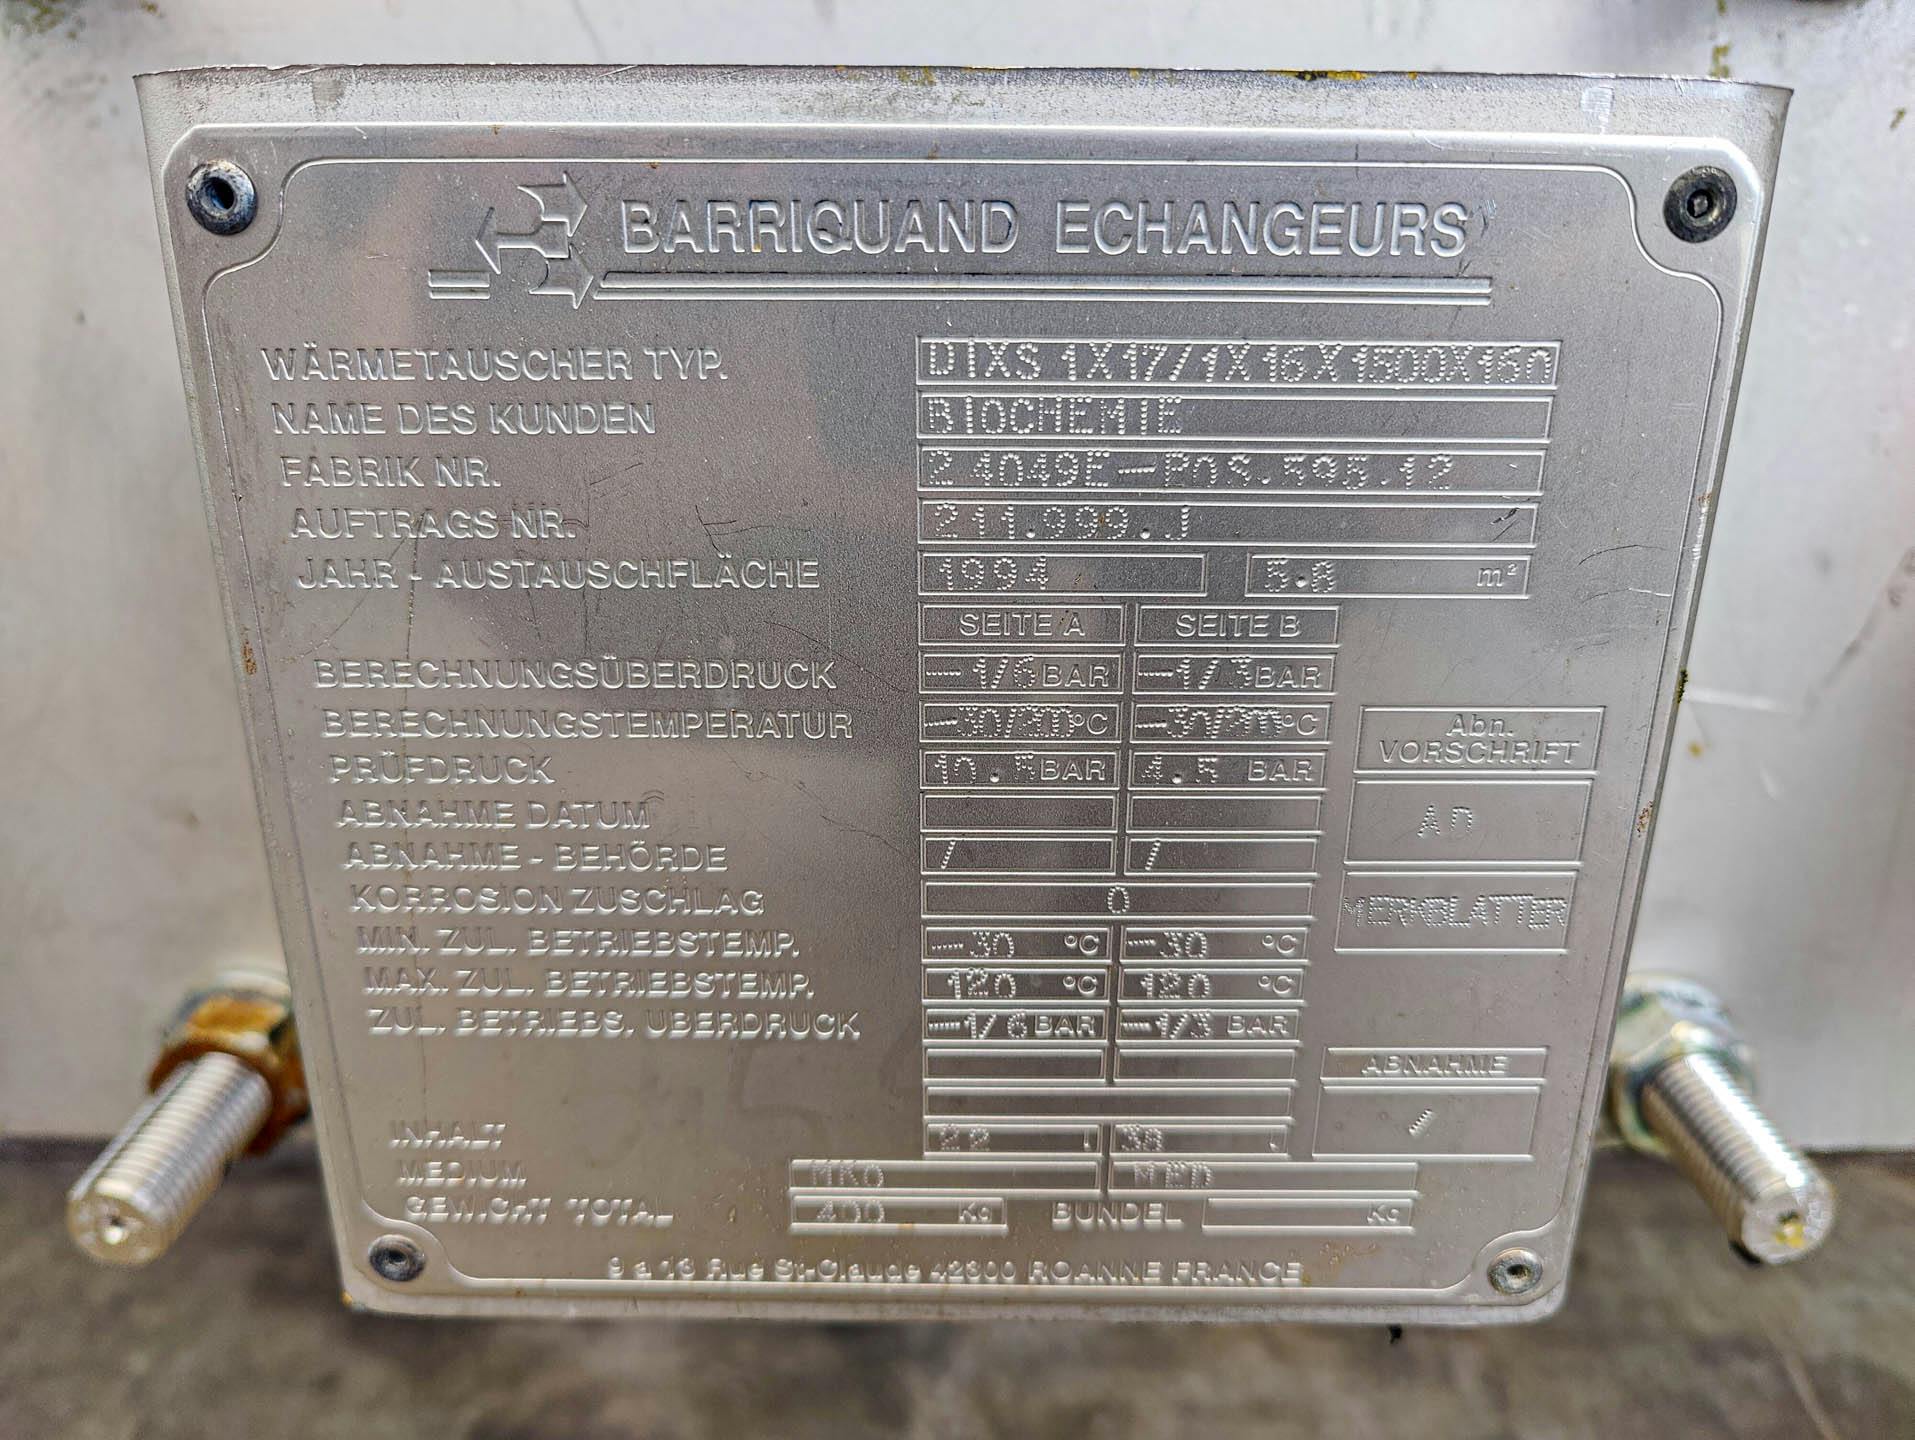 Barriquand Platular DIXS 1x17/1x16/1500/160 welded plate heat exchanger - Permutador de calor de placas - image 6